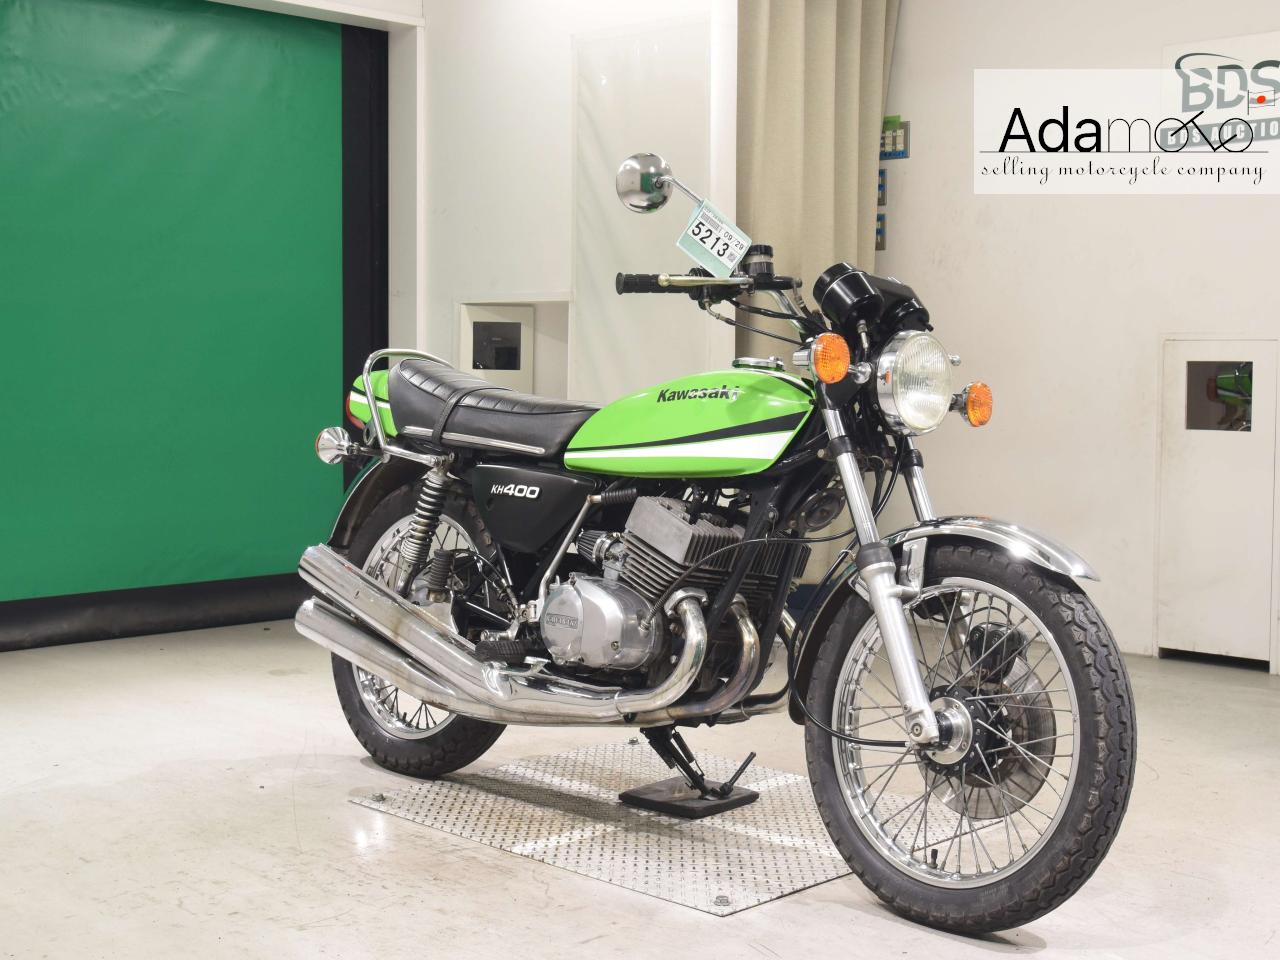 Kawasaki KH400 - Adamoto - Motorcycles from Japan